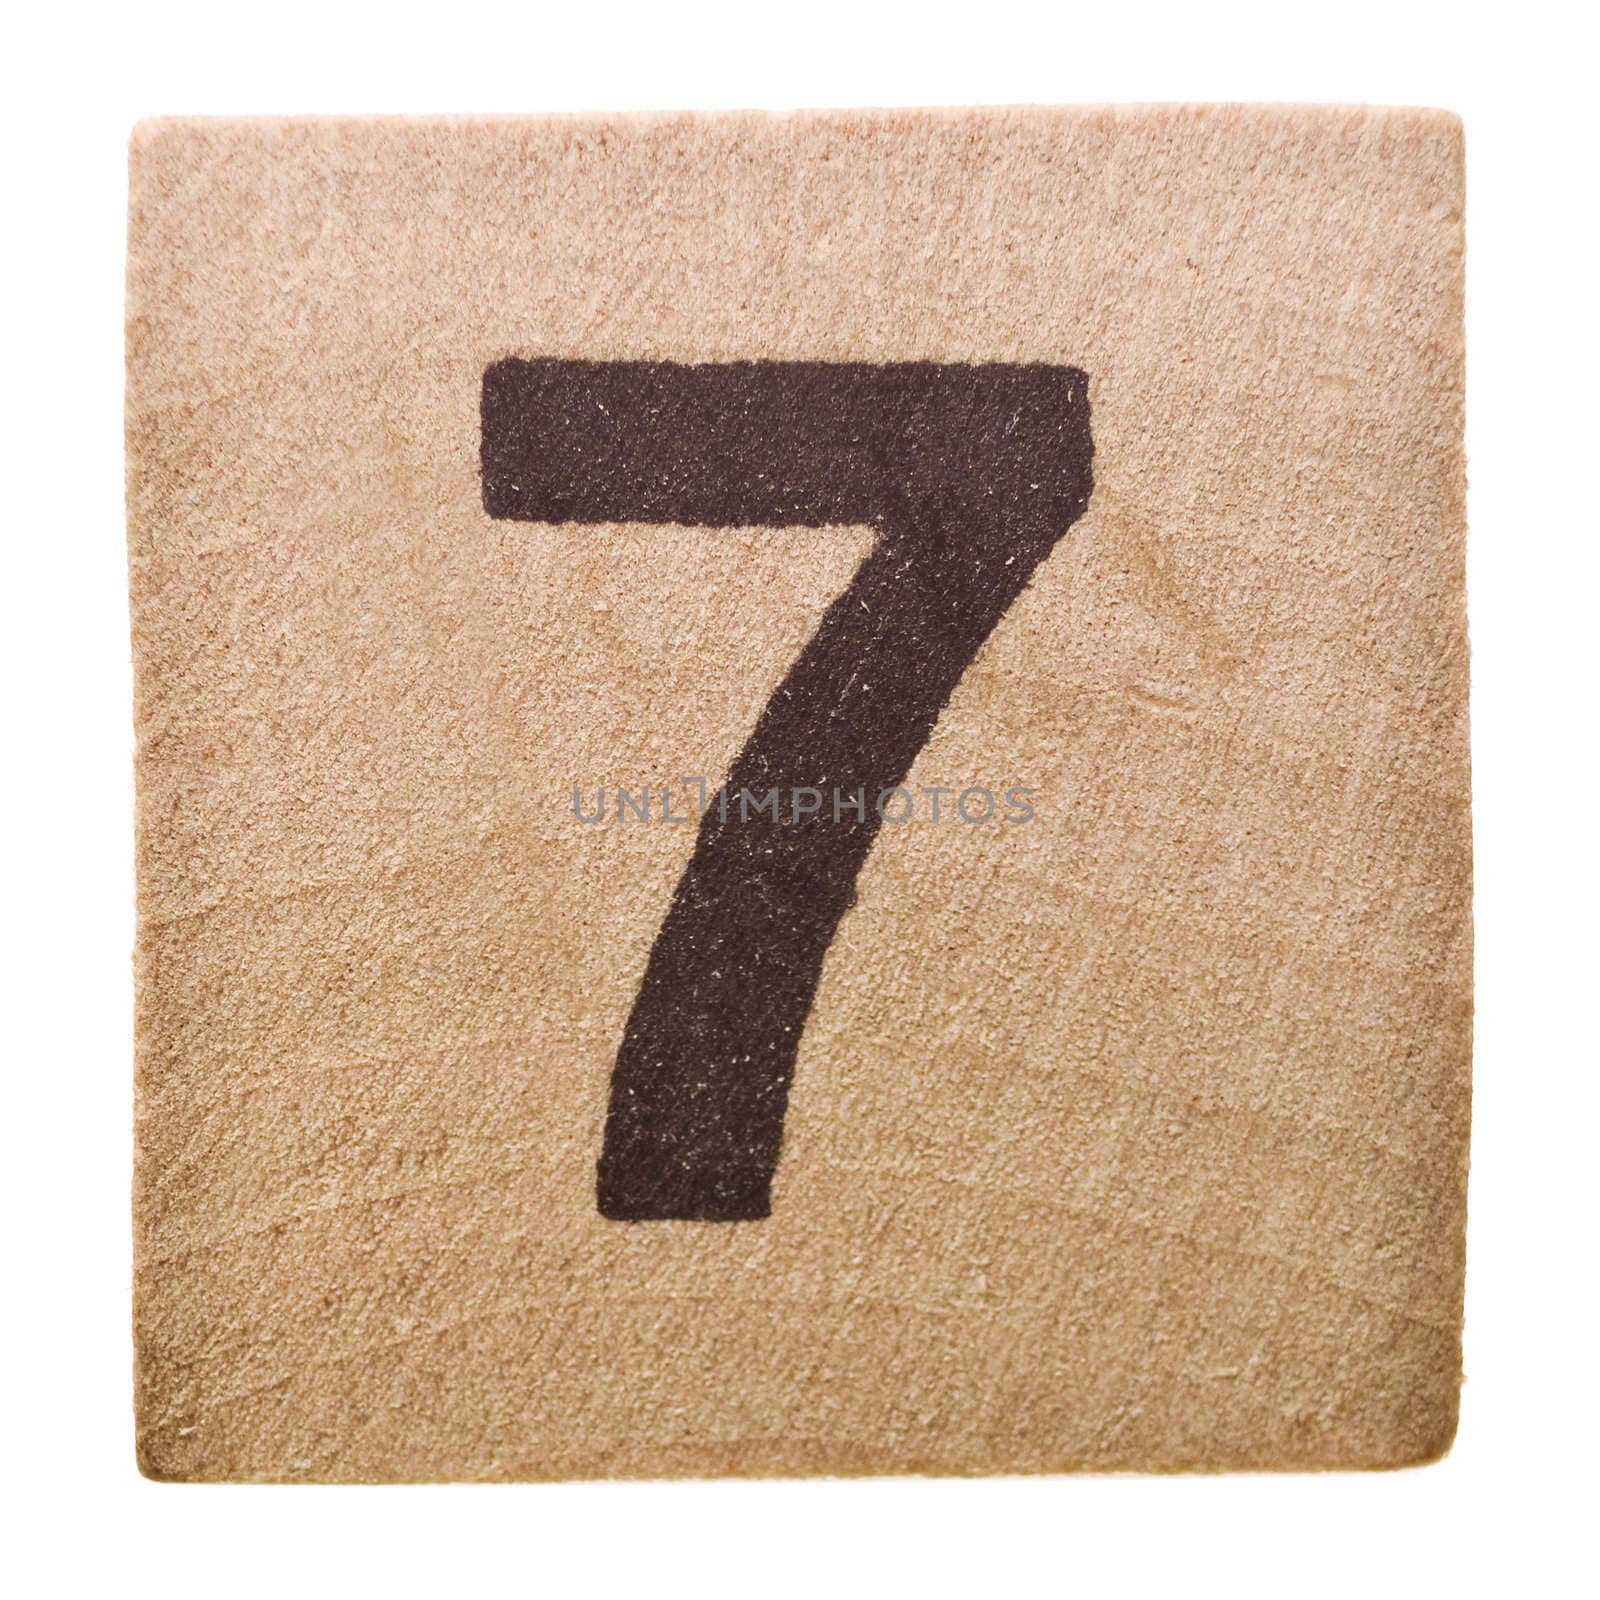 Number seven by gemenacom